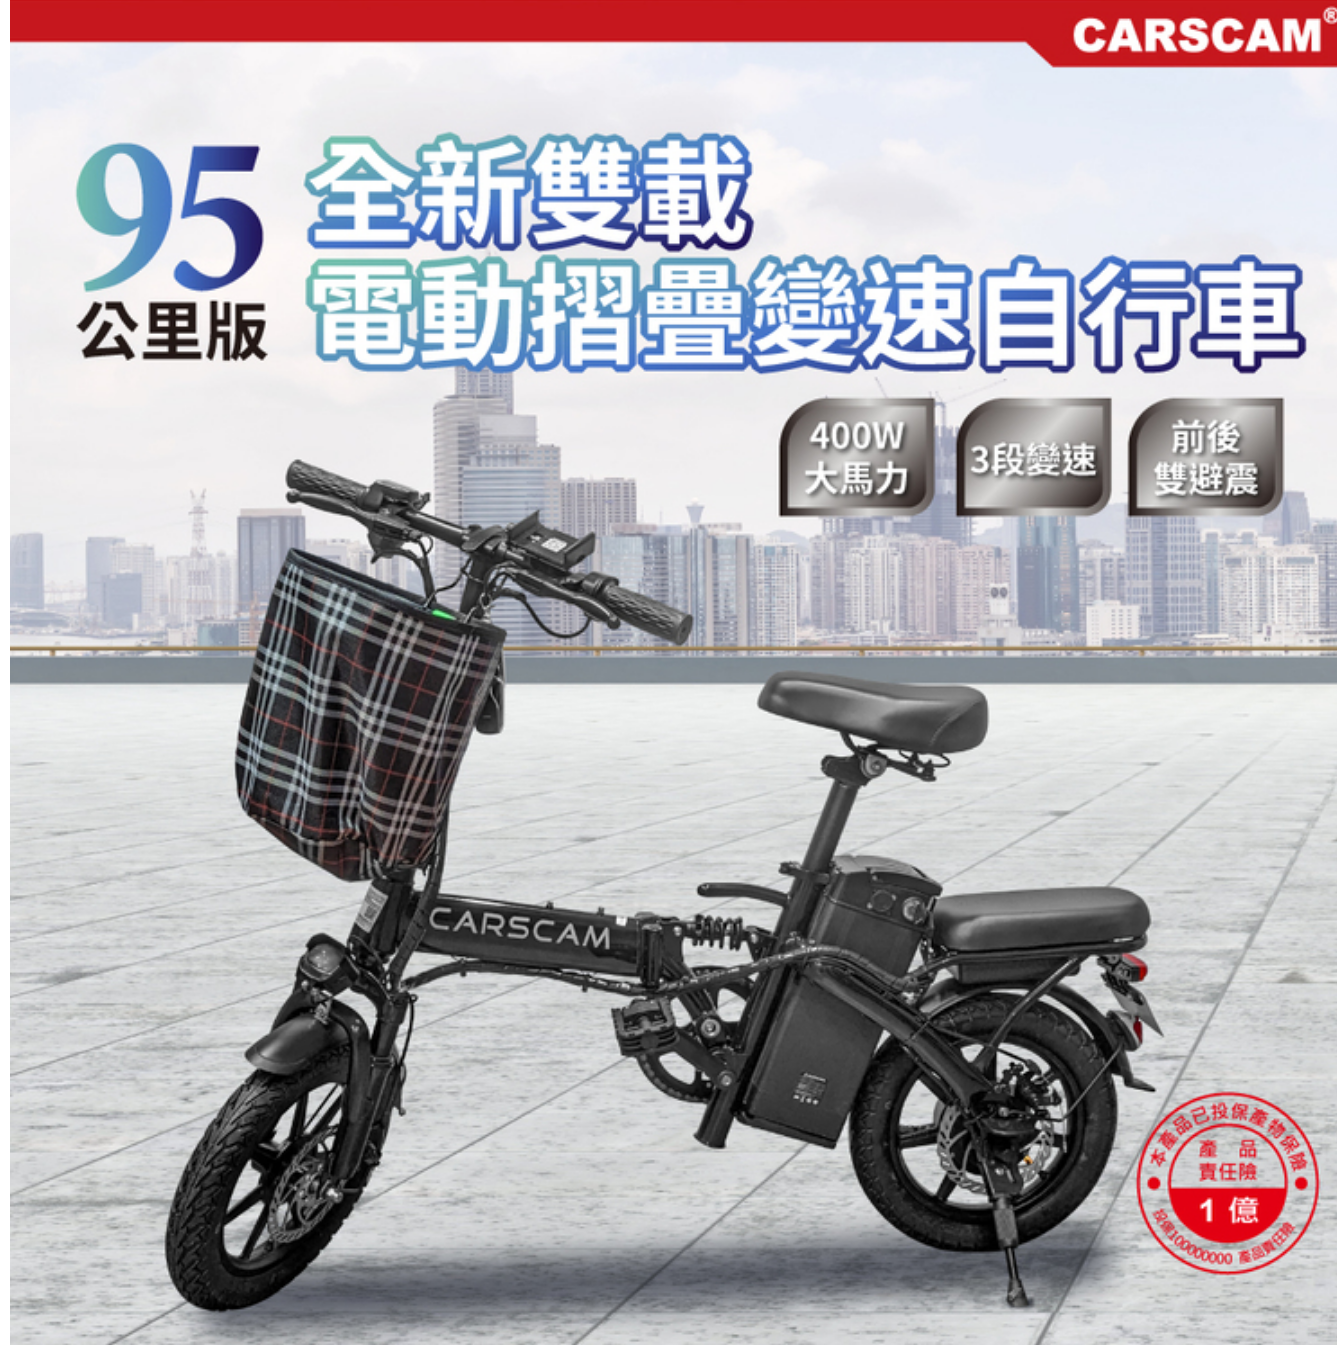 電動自行車推薦CARSCAM 95公里電力輔助都市電動自行車